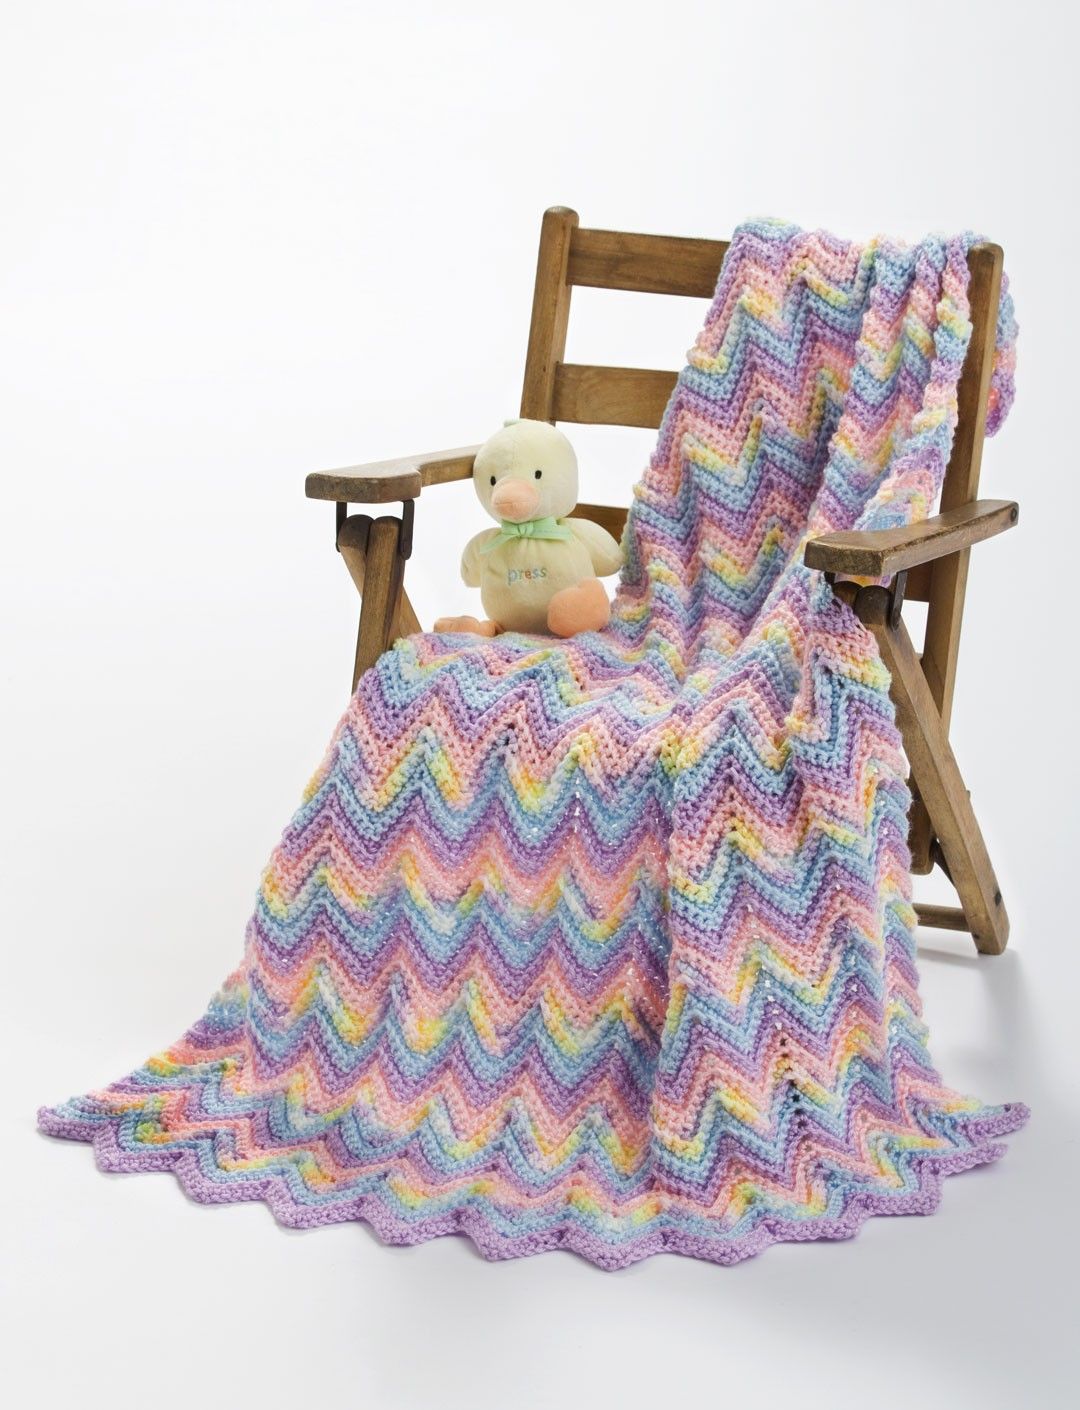 Pastel Rainbow baby blanket rainbow baby blanket large baby blanket soft baby blanket bright baby blanket unique baby blanket